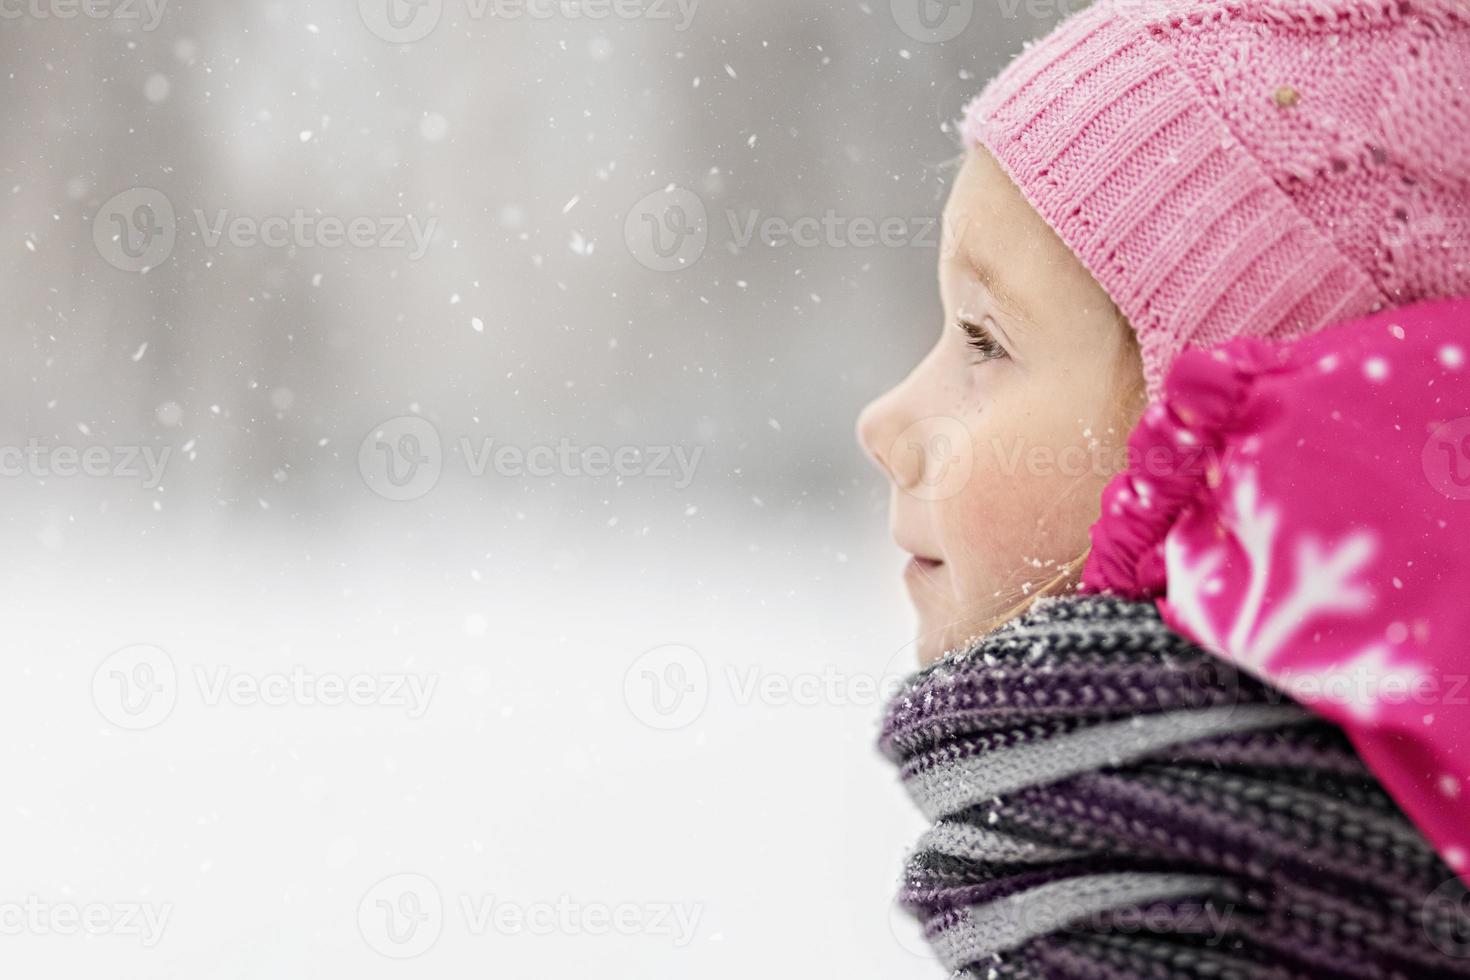 porträtt av en liten flicka i rosa närbild. ett barn njuter av snöfallet. jullov foto